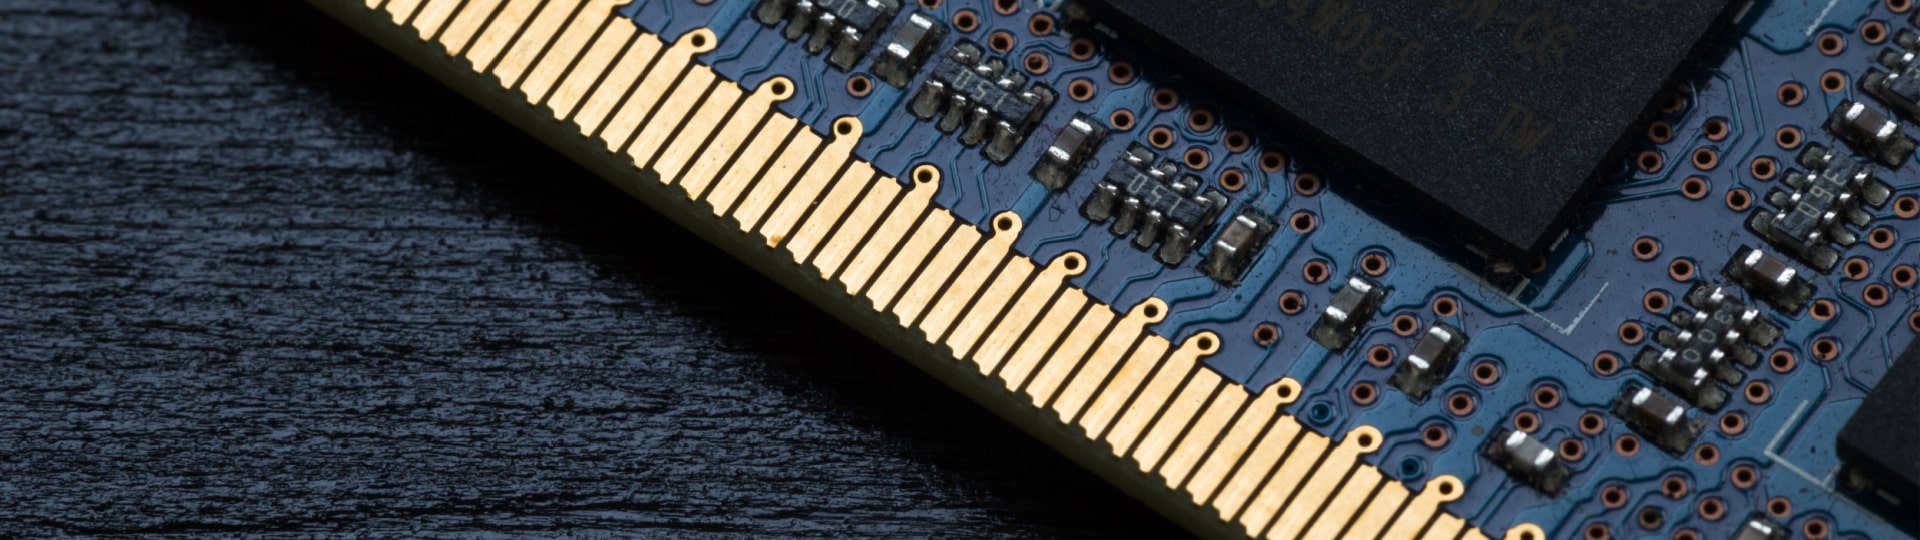 Samsung představil nový čip pro umělou inteligenci